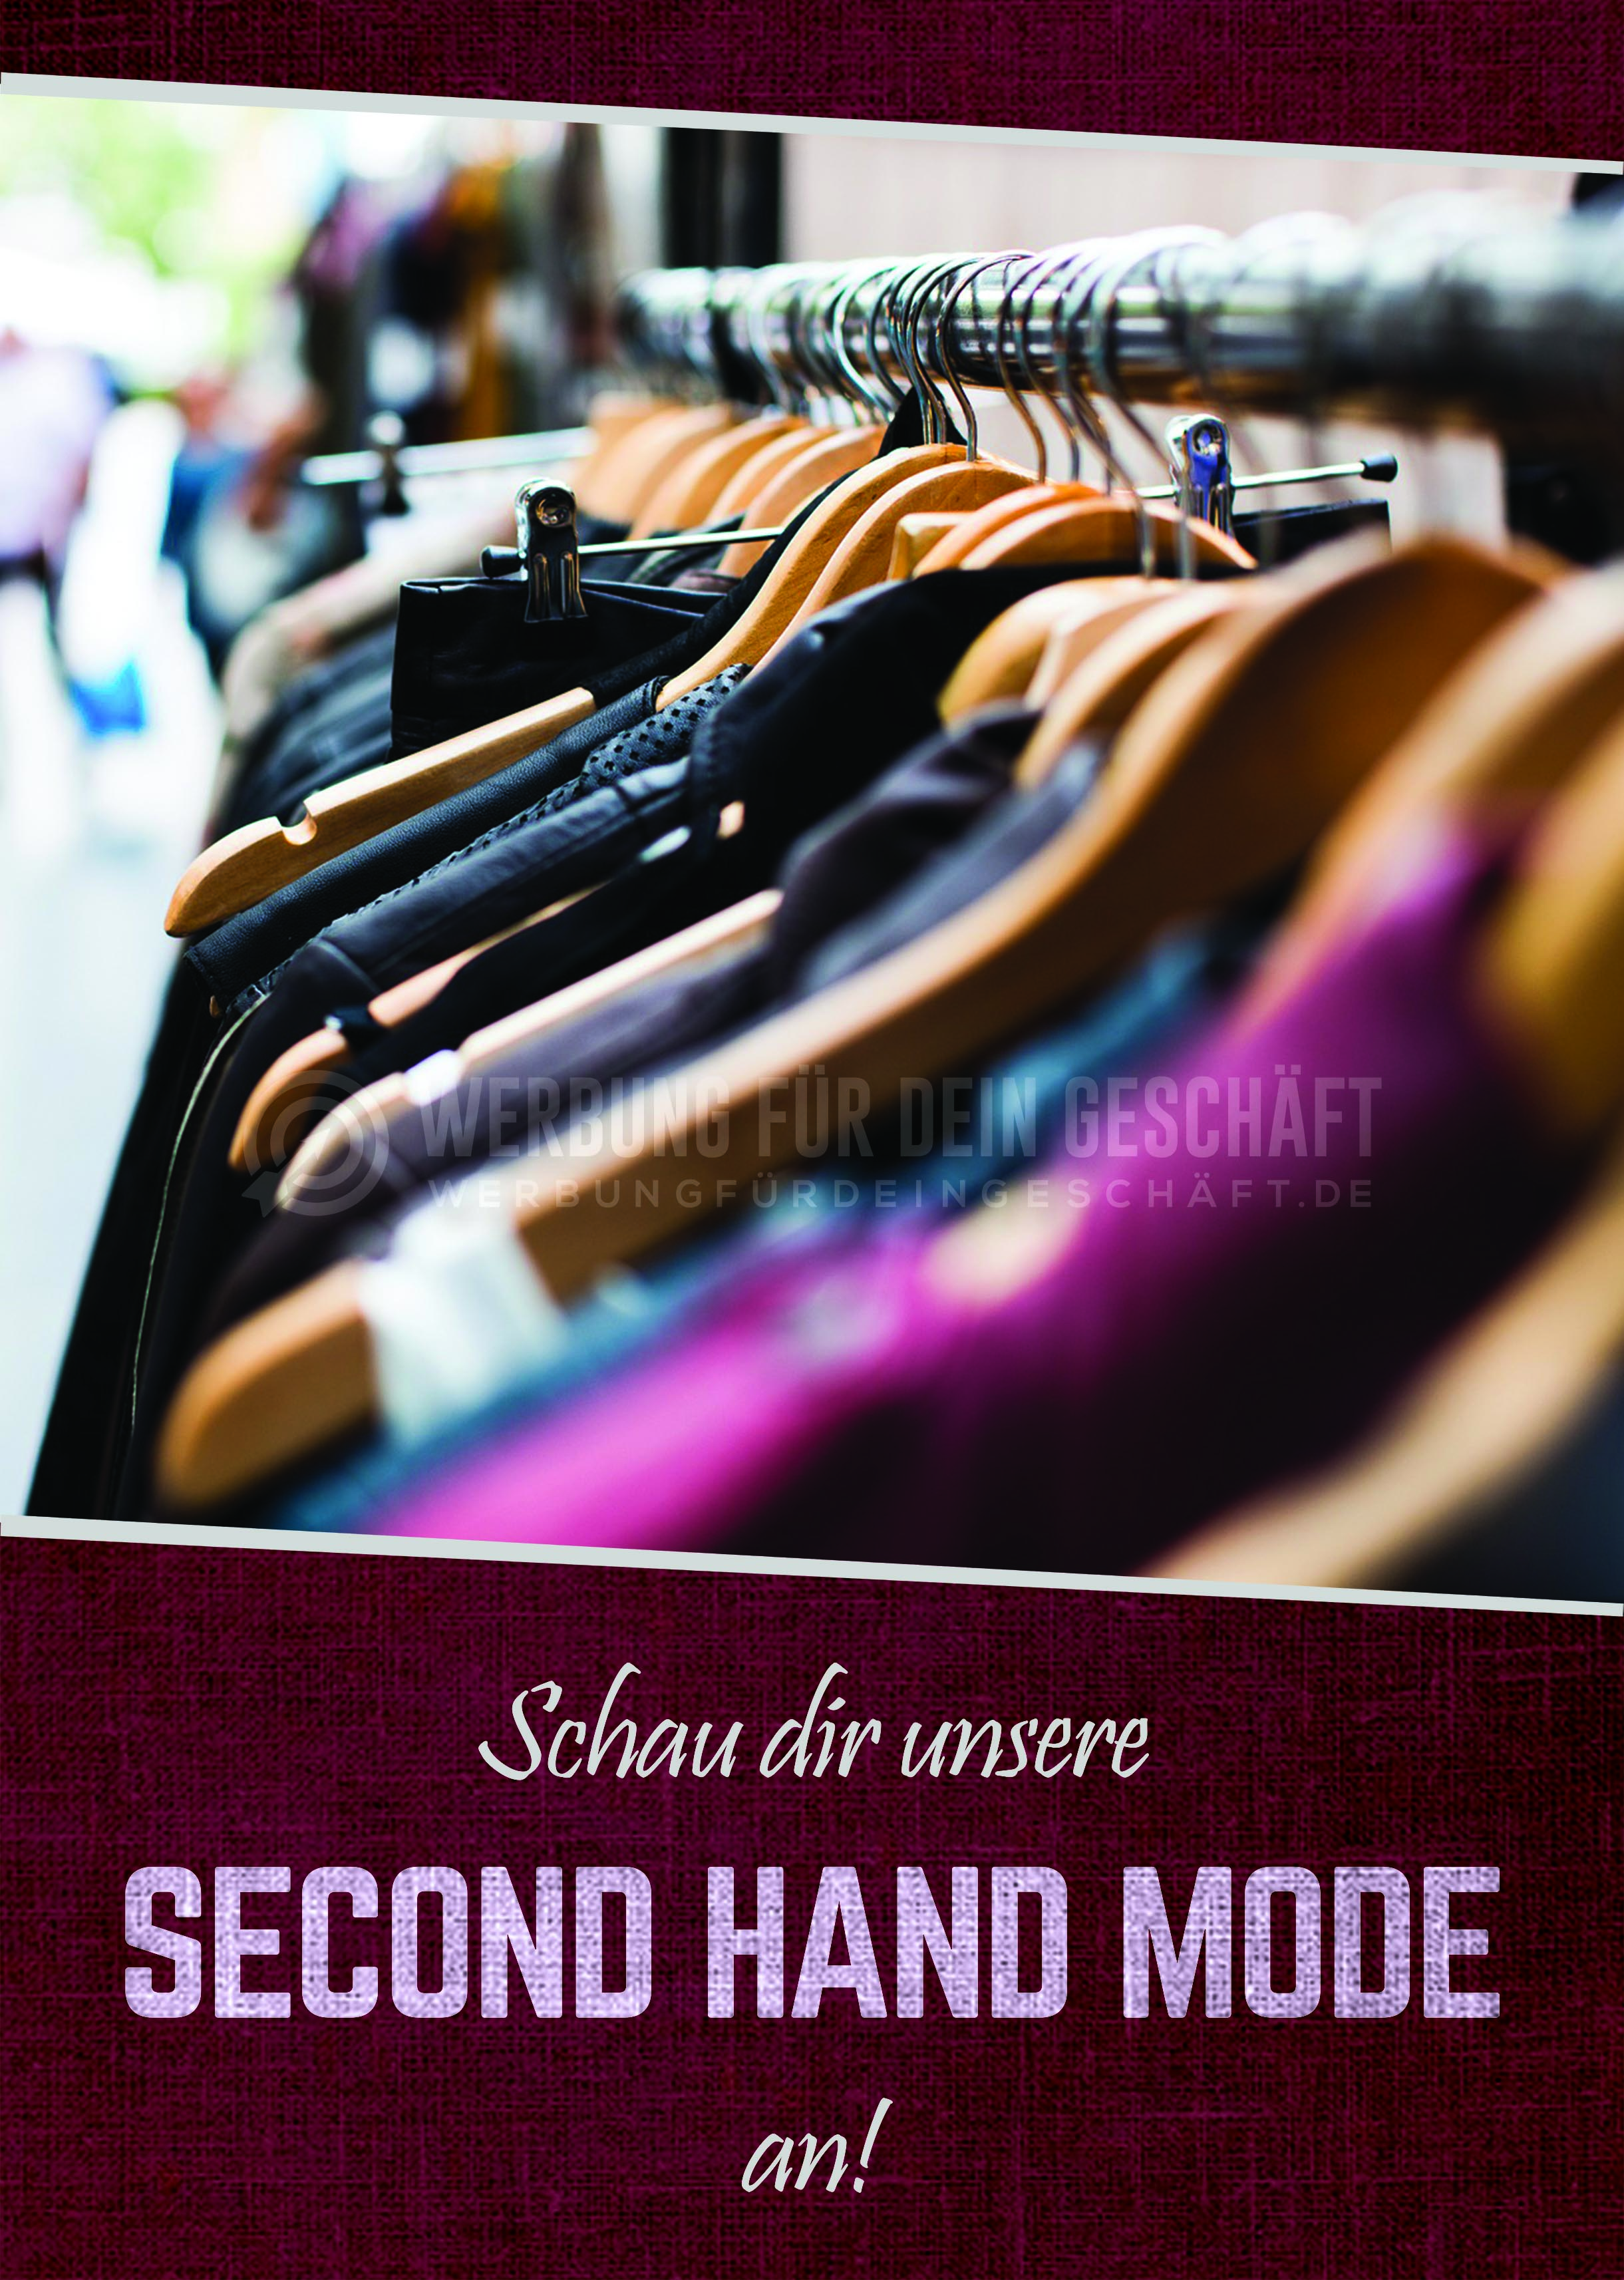 Schau dir unsere Second Hand Mode an Plakat | Werbung